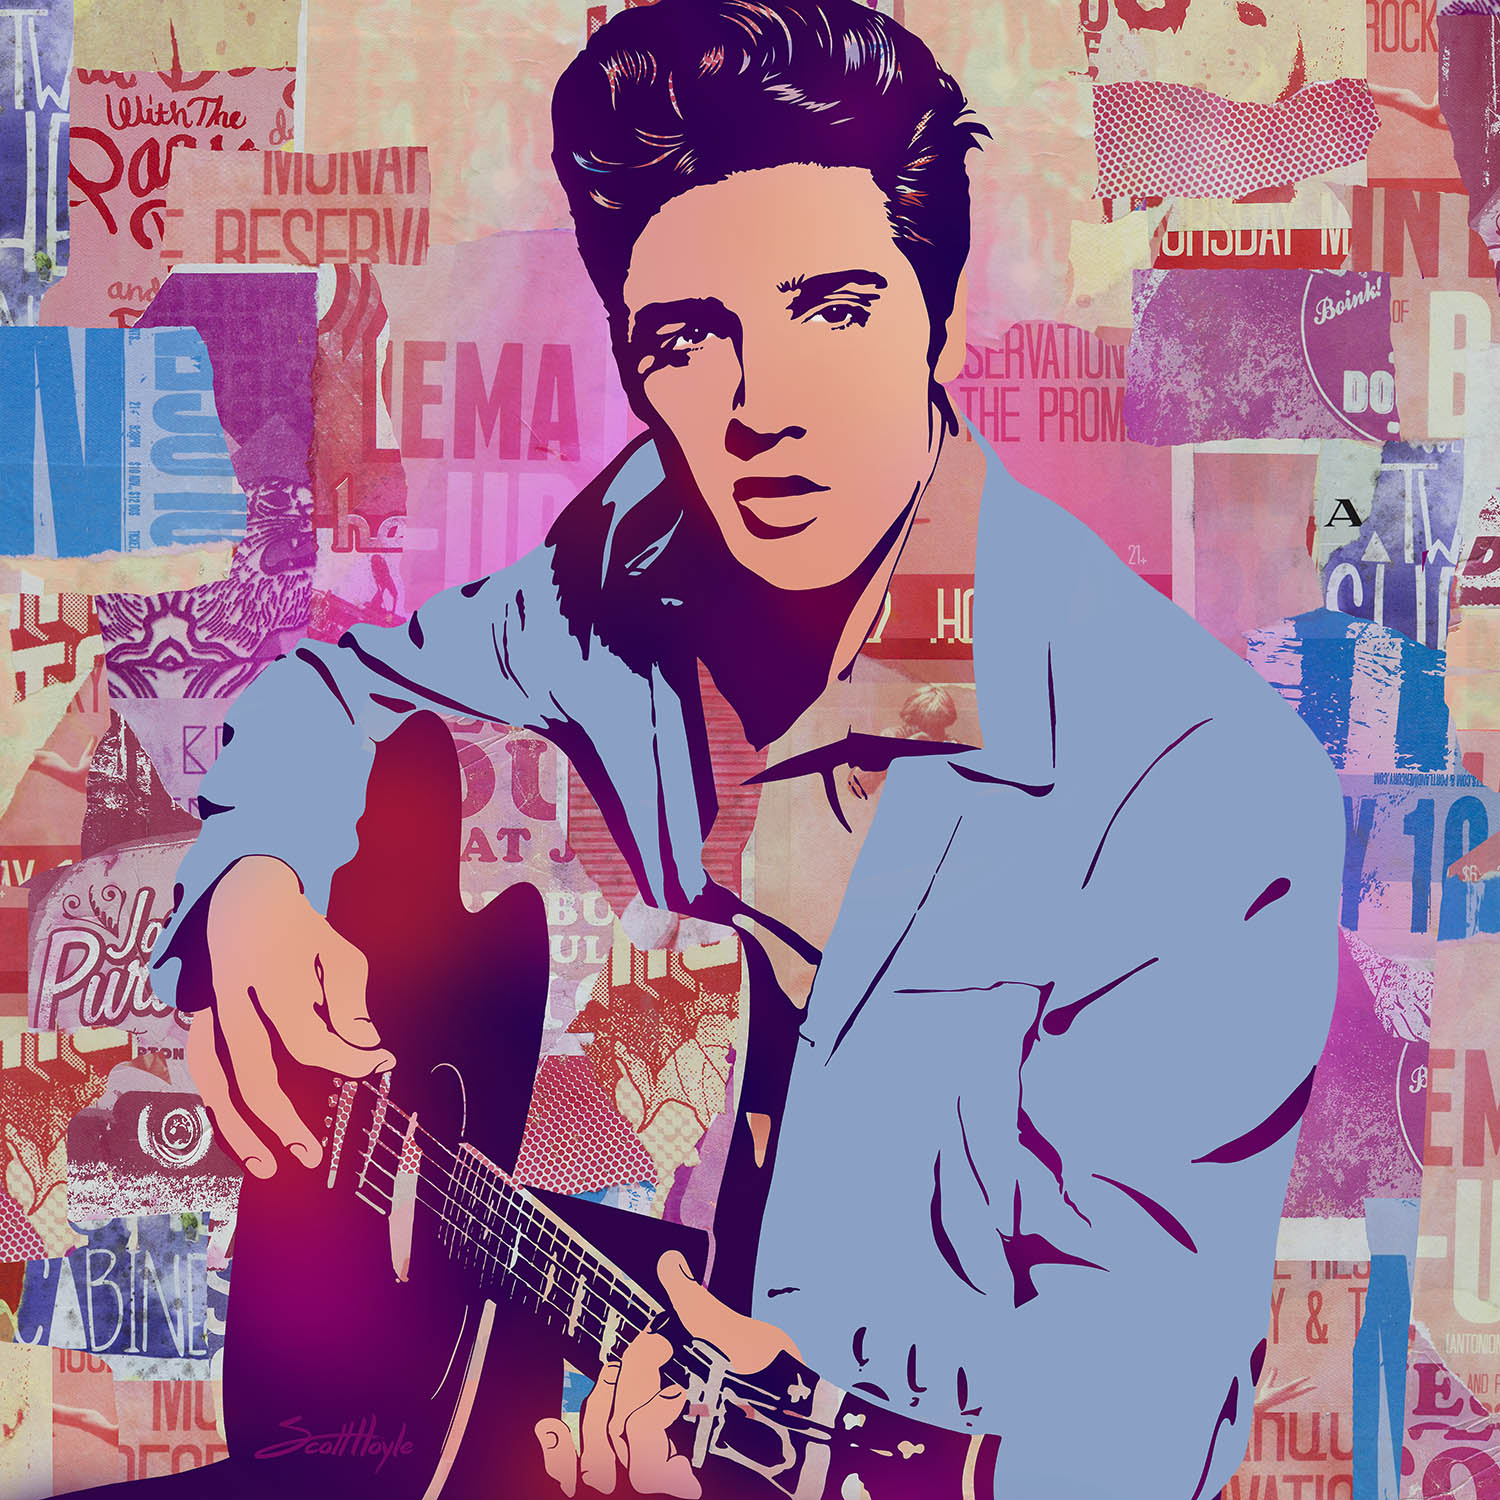 Elvis.jpg